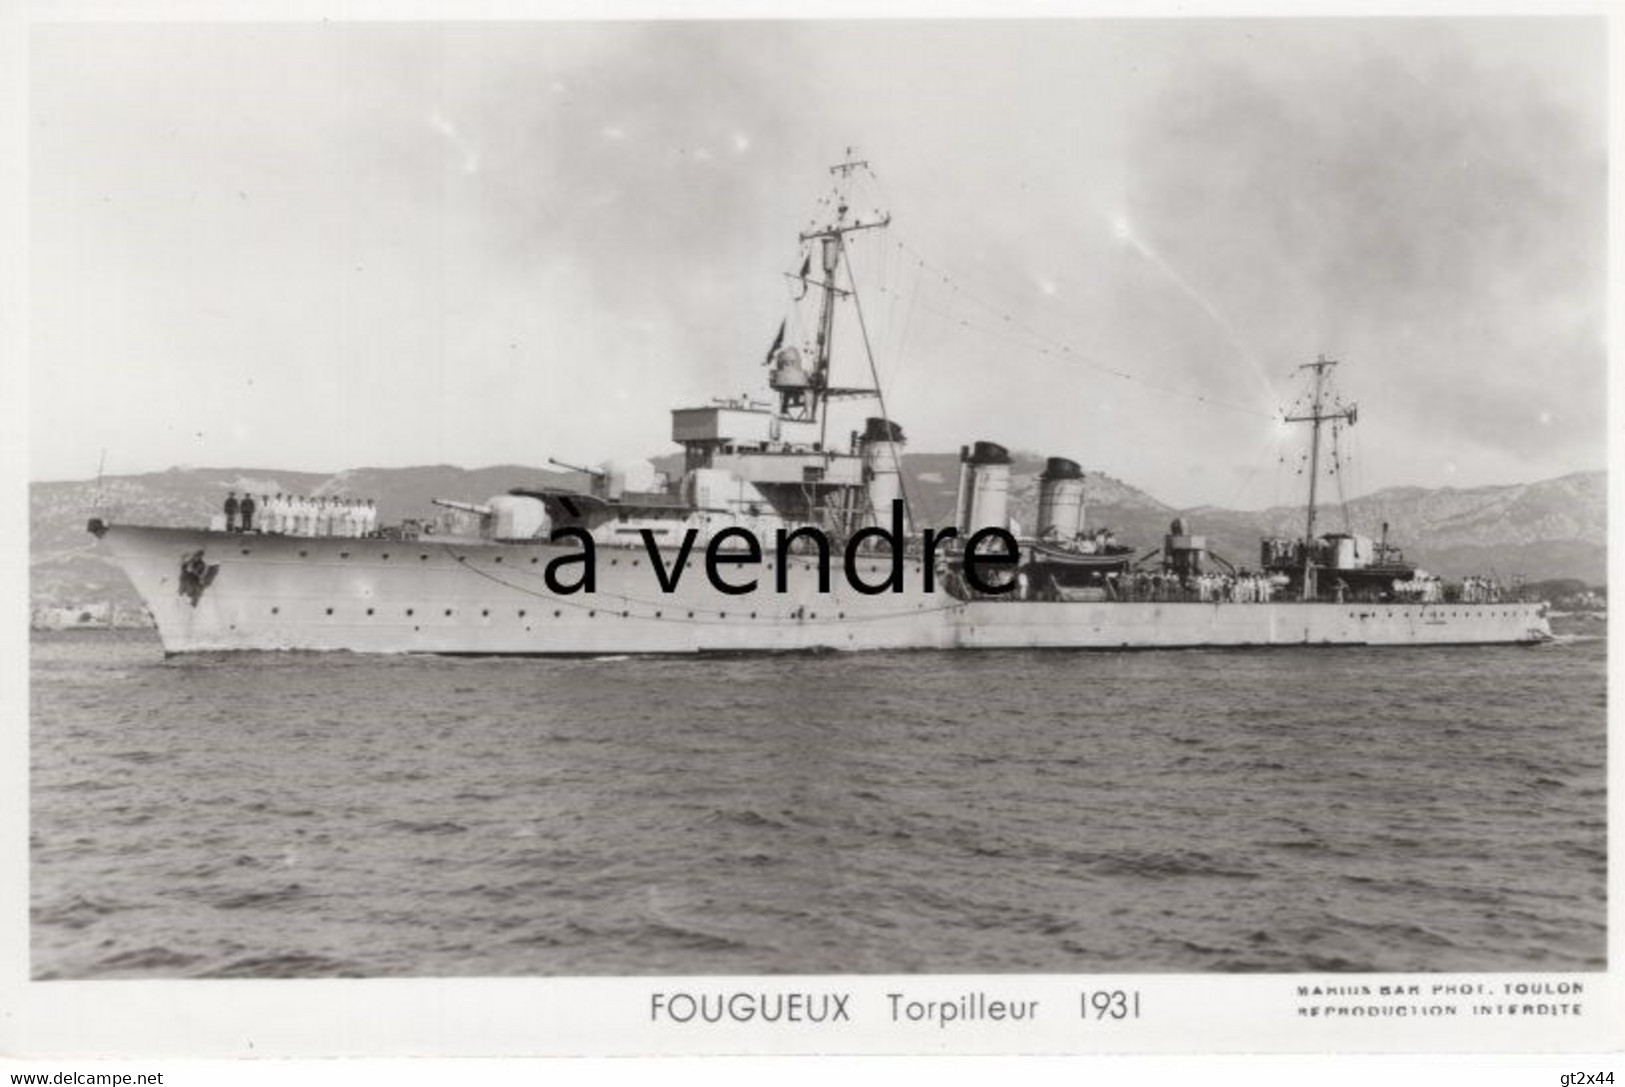 FOUGUEUX, Torpilleur, 1931 - Krieg